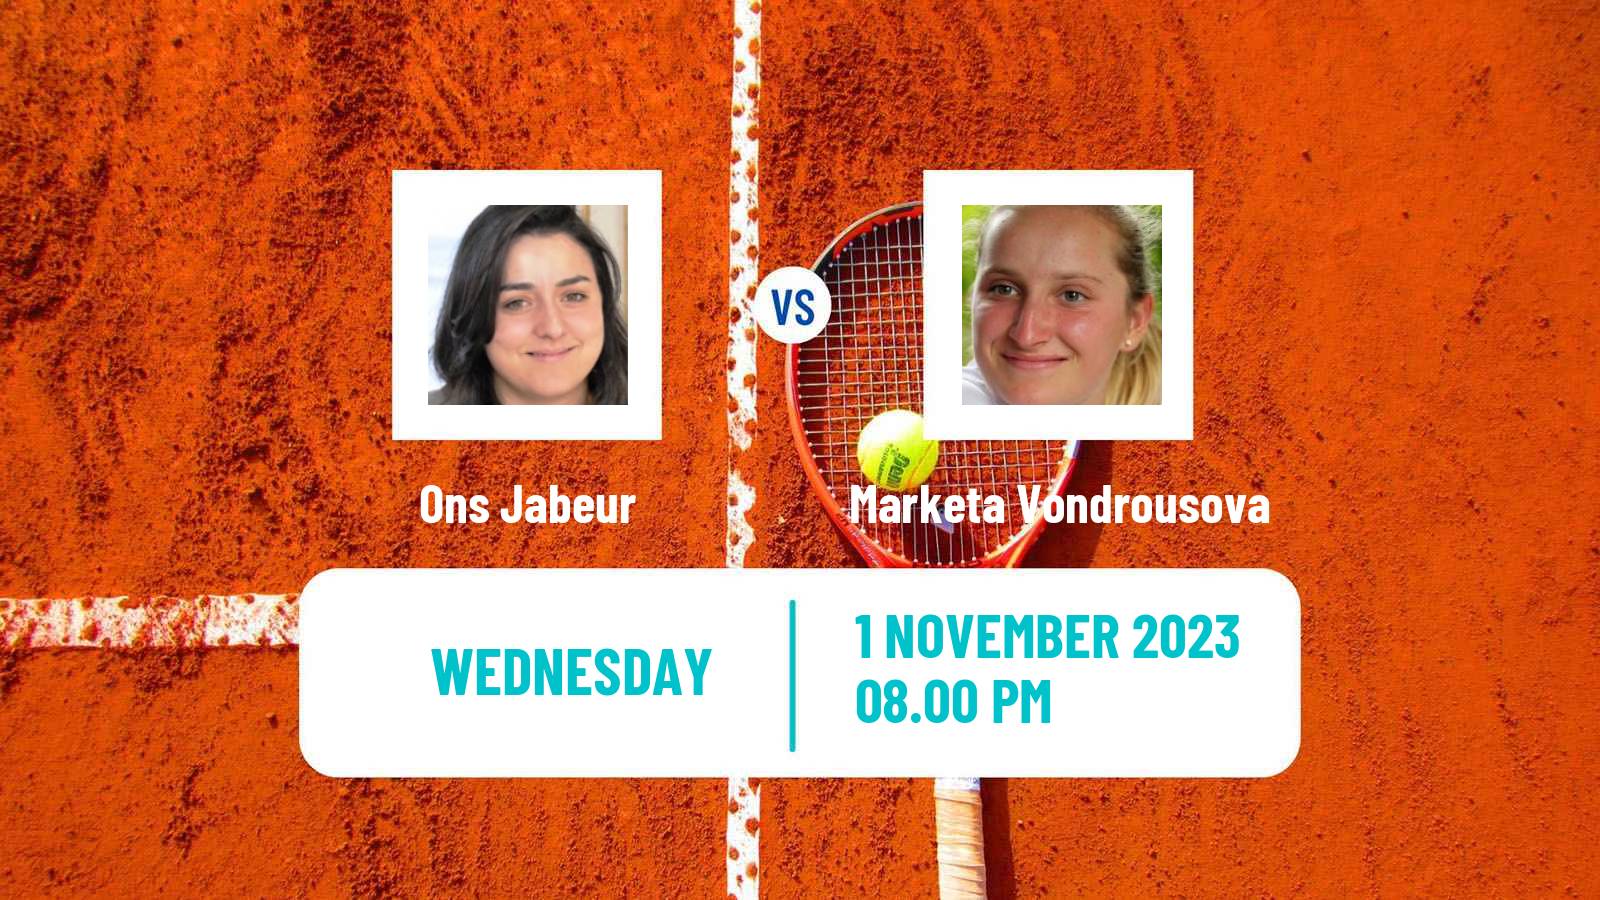 Tennis WTA Finals Ons Jabeur - Marketa Vondrousova